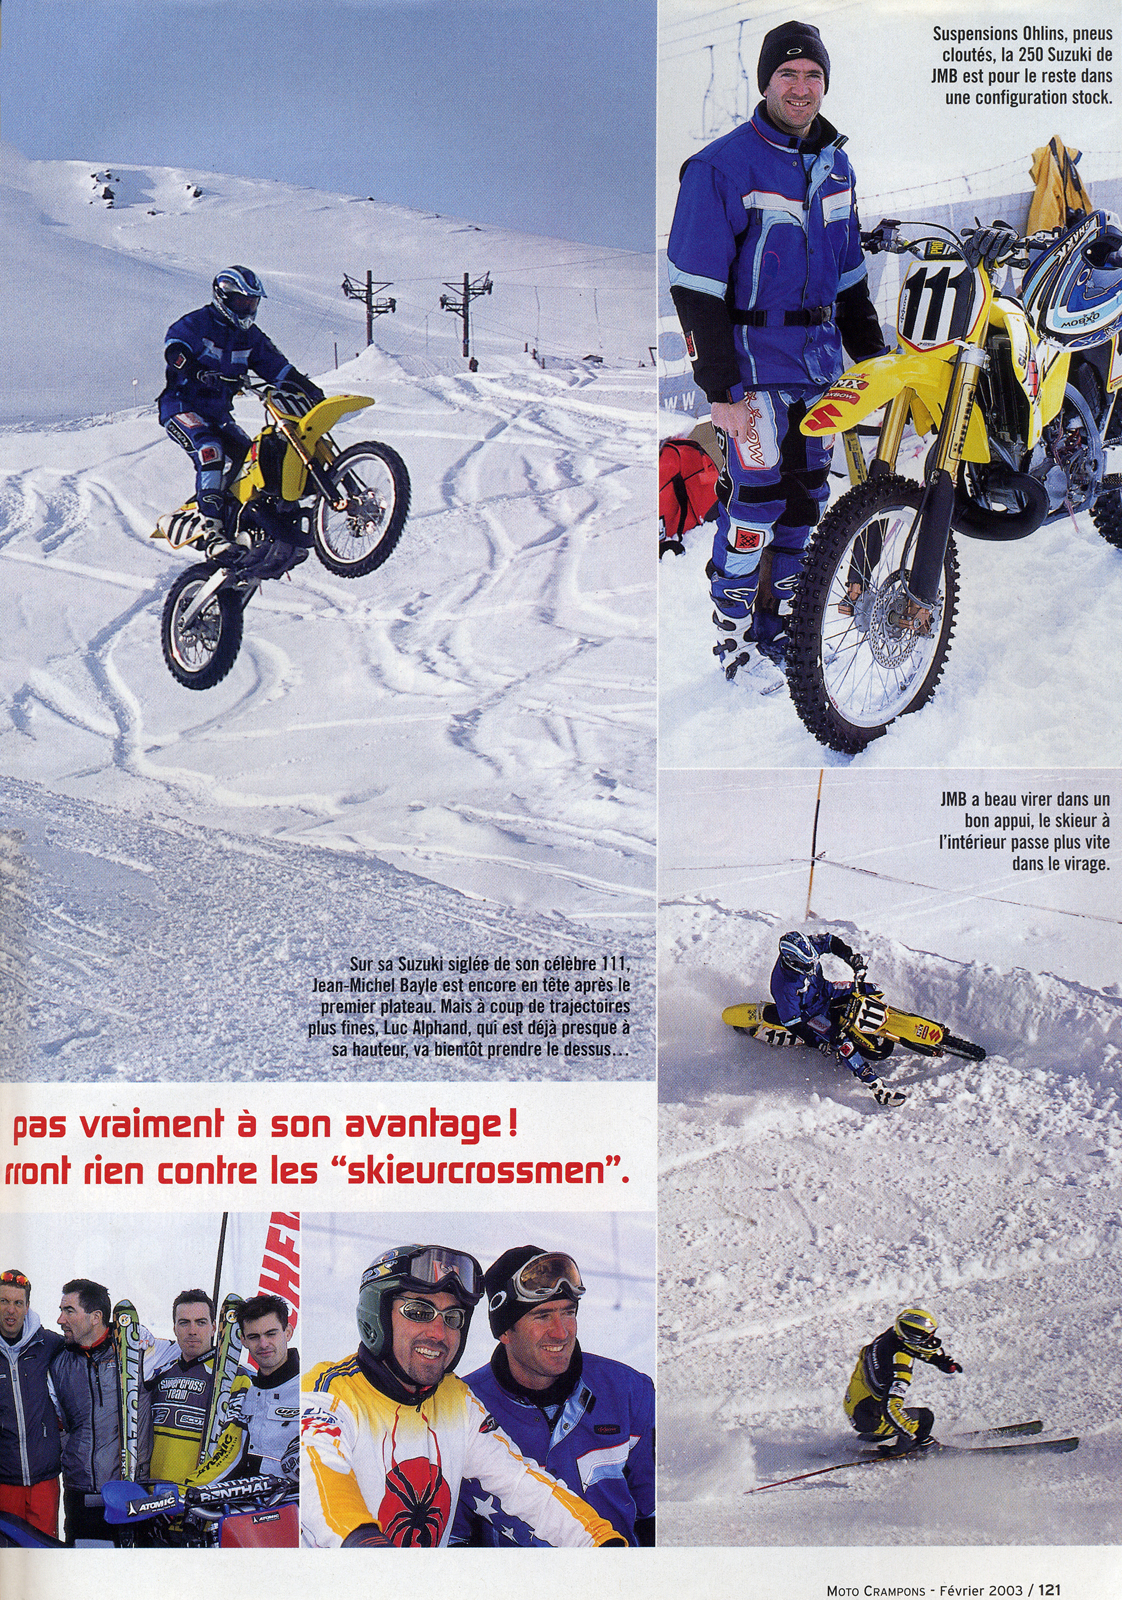 Une petite confrontation MX contre Skicross à la montagne, voilà le challenge lancé par Luc Alphand à Jena-Michel Bayle